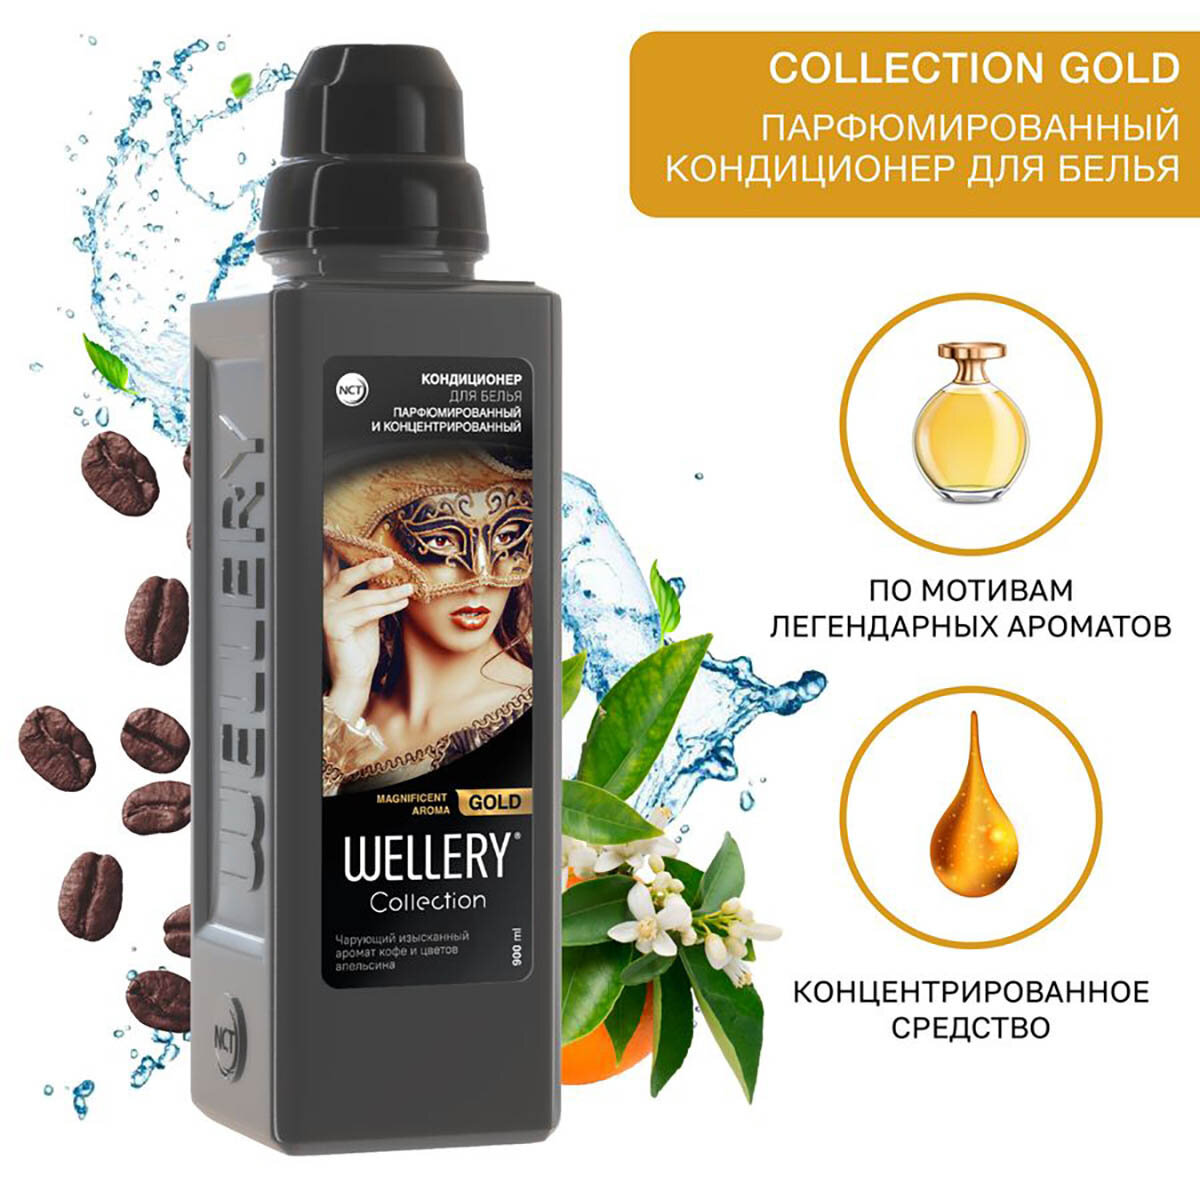 Кондиционер для белья парфюмированный, аромат кофе и цветов апельсина Wellery Collection Gold 0,9 л, ПЭТ